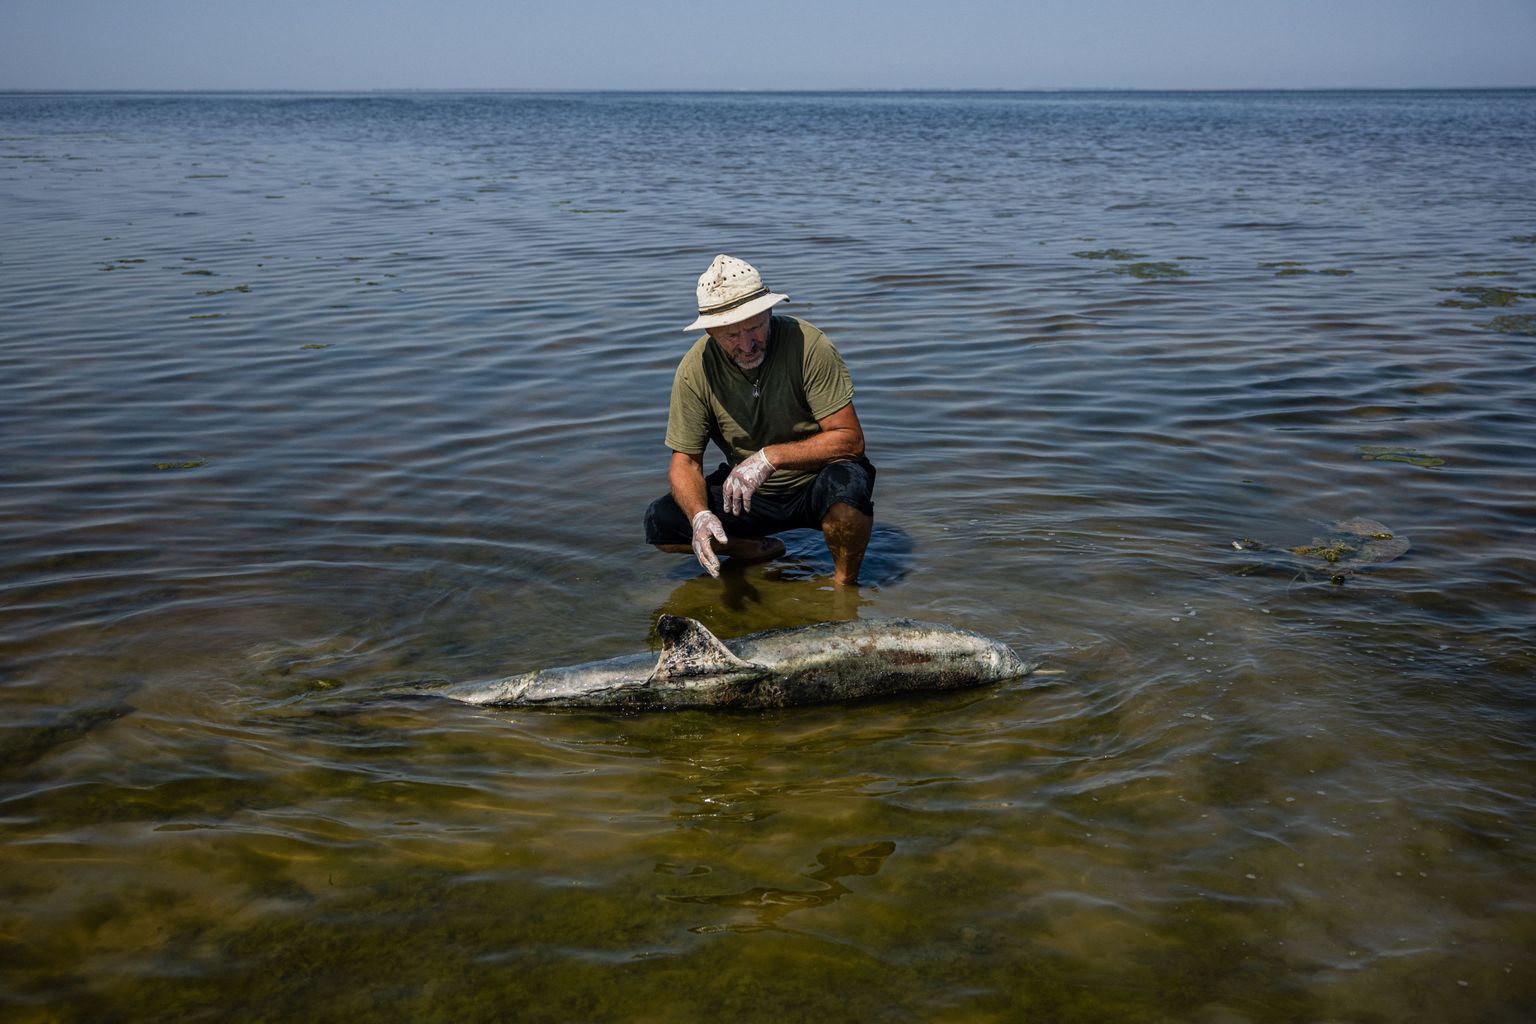 Tusli suudme rahvuspargi teadusjuht Ivan Russev uurimas surnud delfiini 28. augustil 2022. aastal.